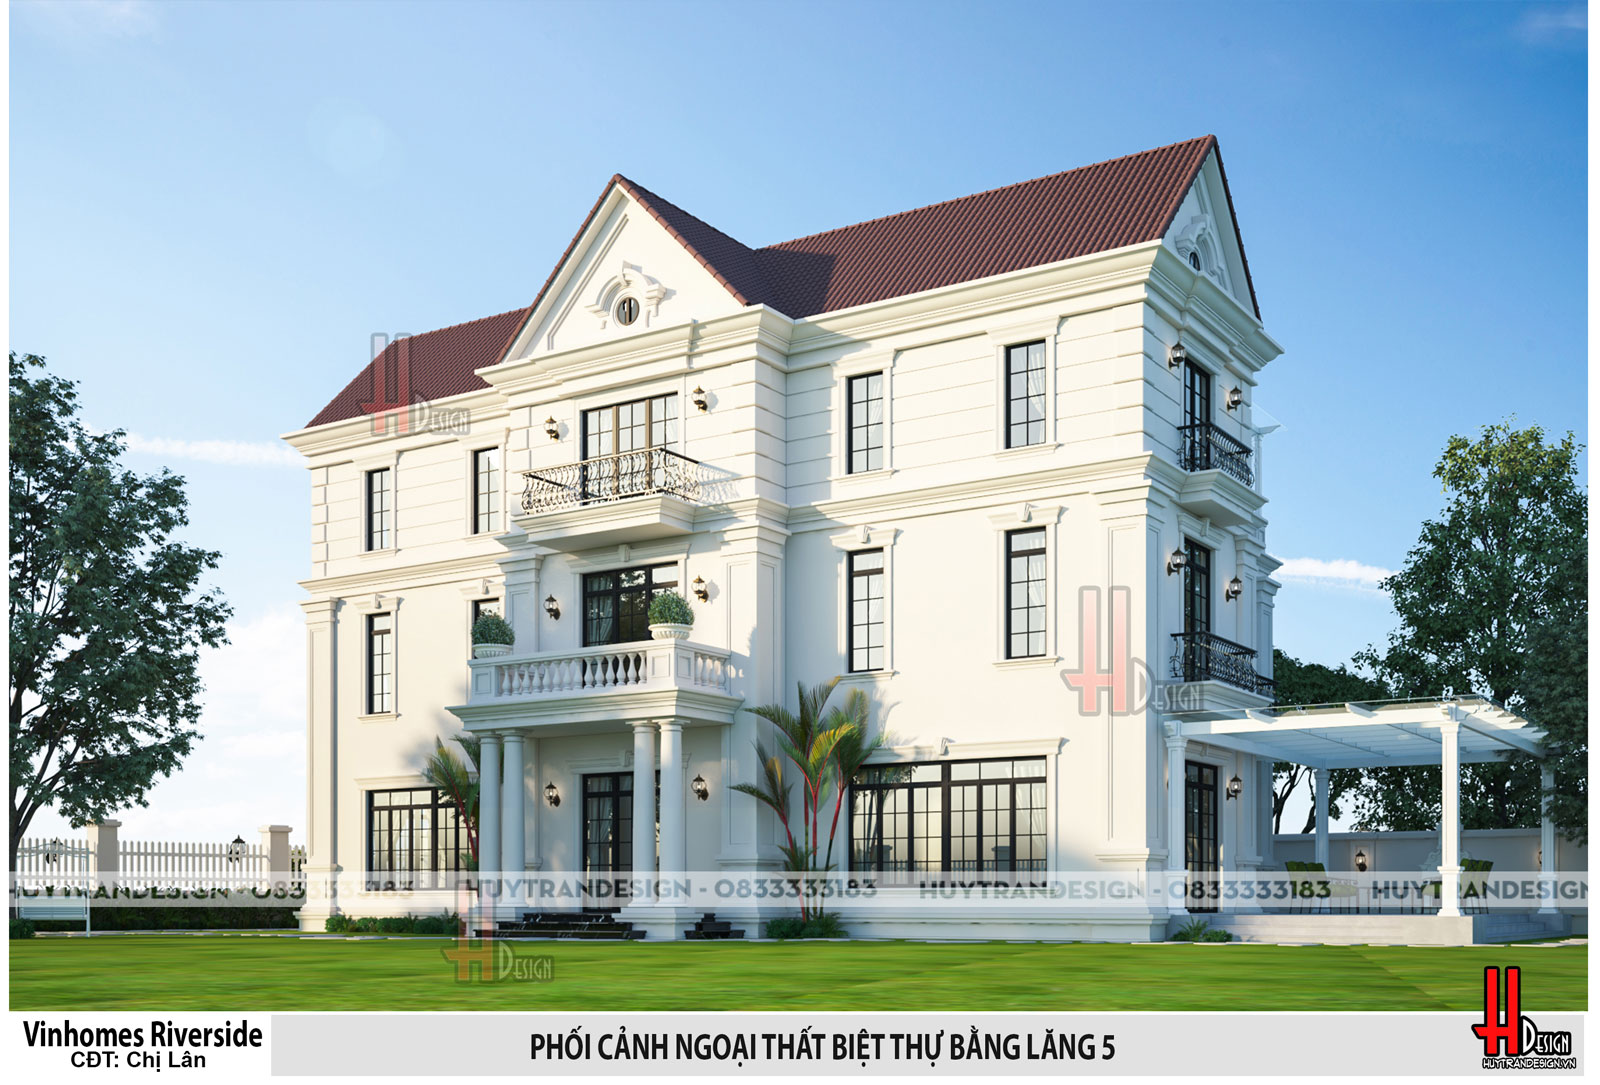 Thiết kế biệt thự đẹp - Huytrandesign tư vấn, thiết kế, thi công, sửa chữa nhà đẹp tại Long Biên, Hà Nội - v1